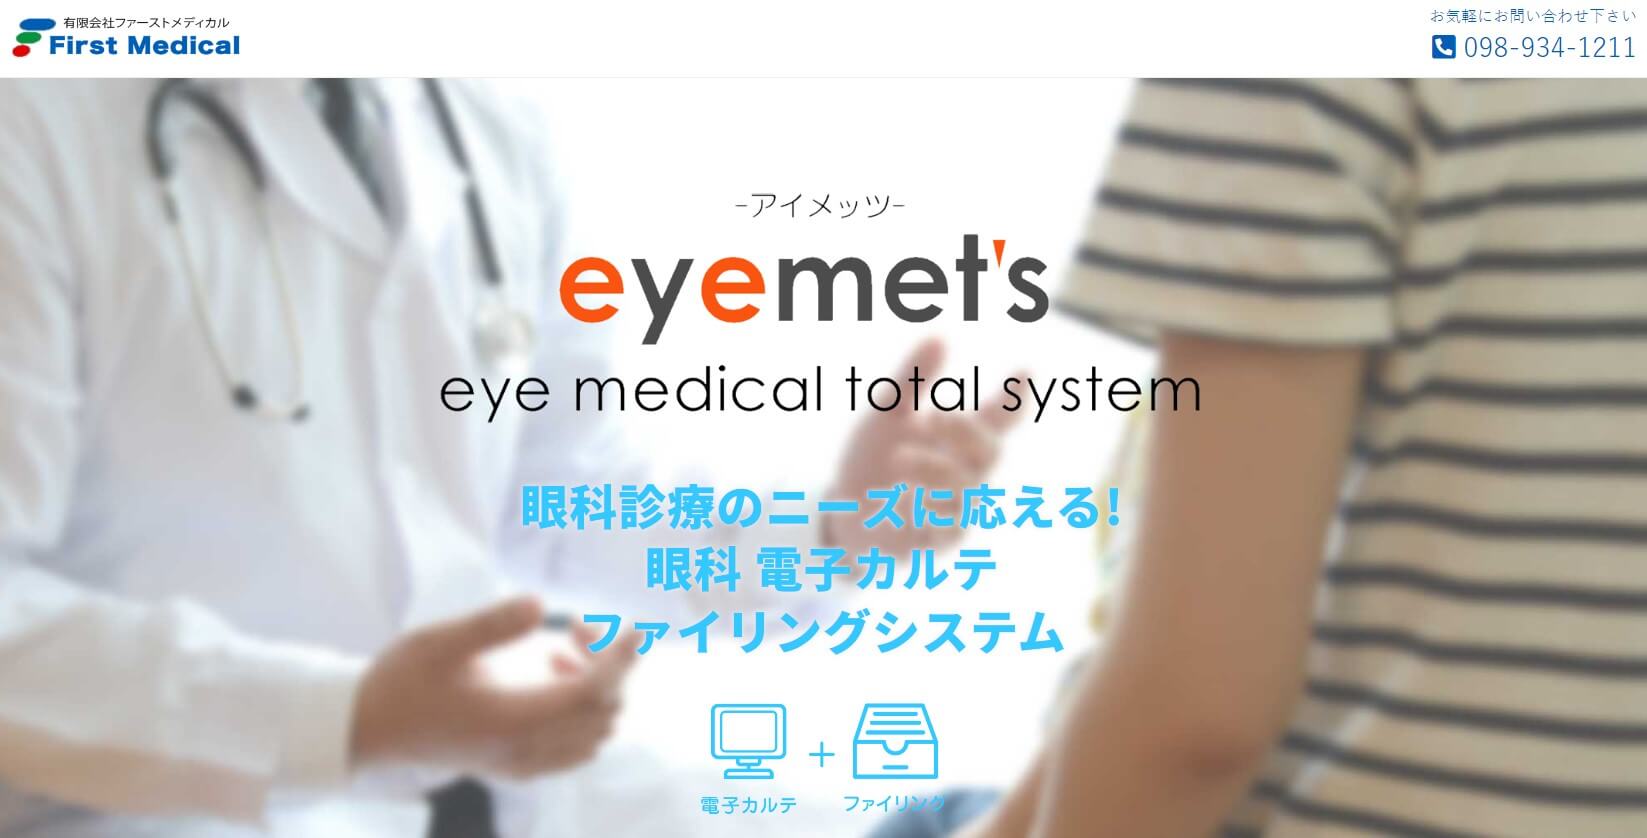 eyemet’sのwebサイト